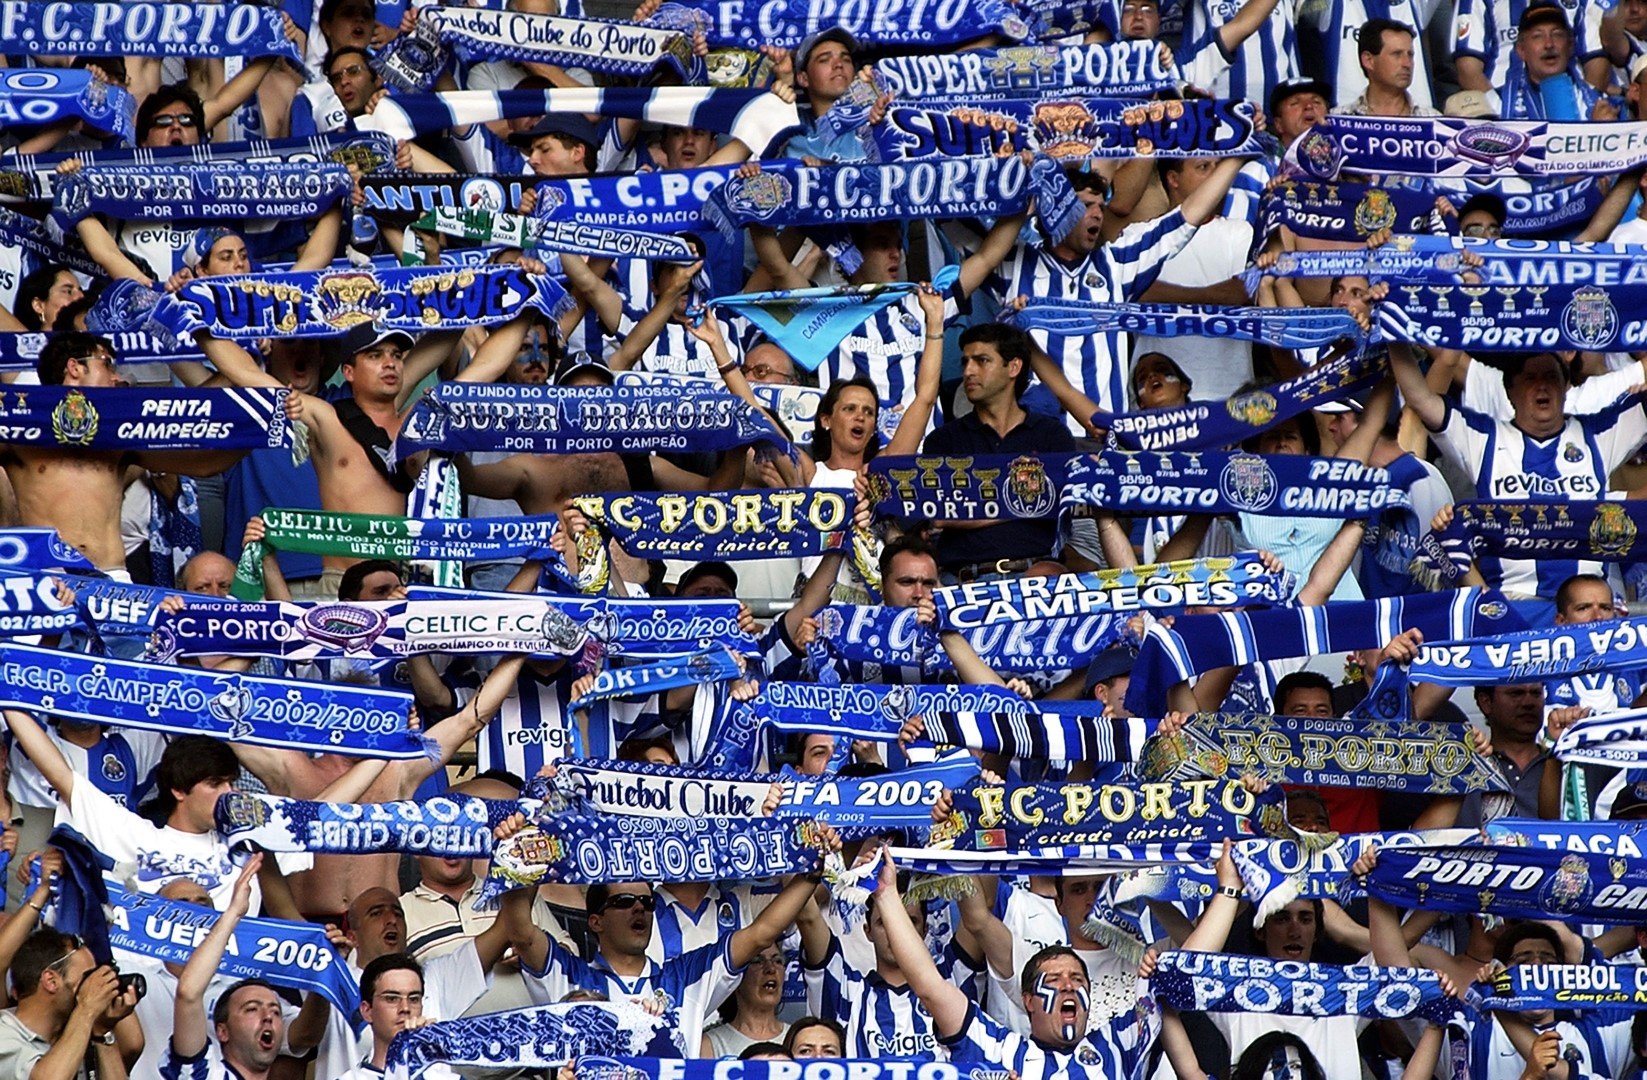 2003 г., Севиля. Феновете на Порто бяха скромни като бройка, докато в сряда в града ще се изсипе не една, а две огромни по численост агитки